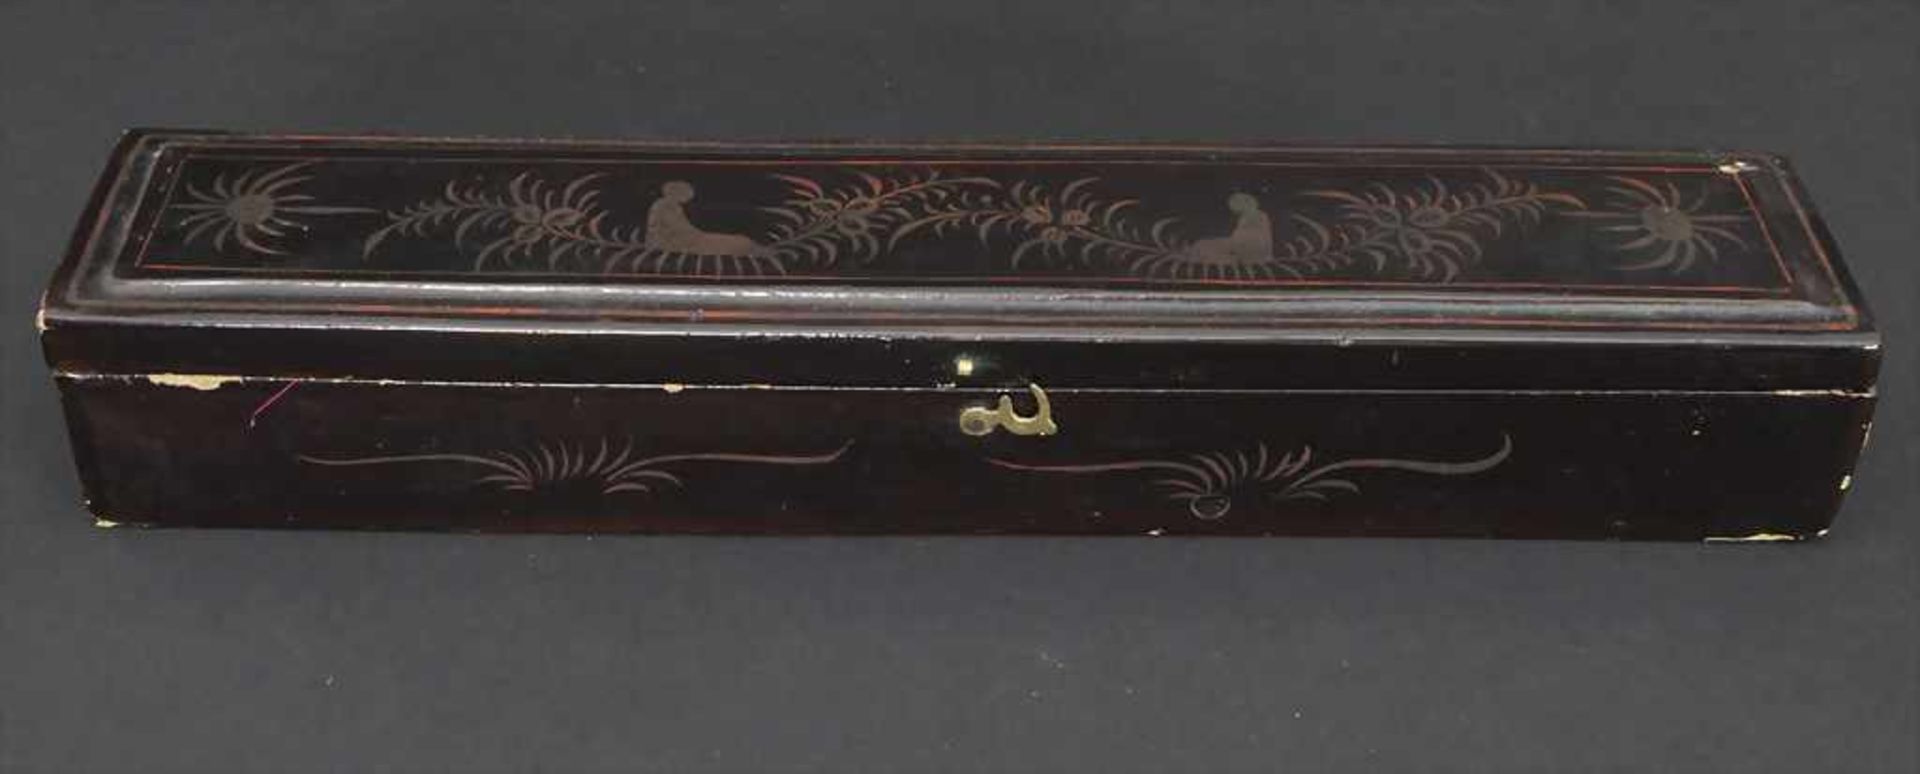 Fächer in originaler Holzschatulle, China, Qing-Dynastie, 18./19. Jh.< - Bild 5 aus 16